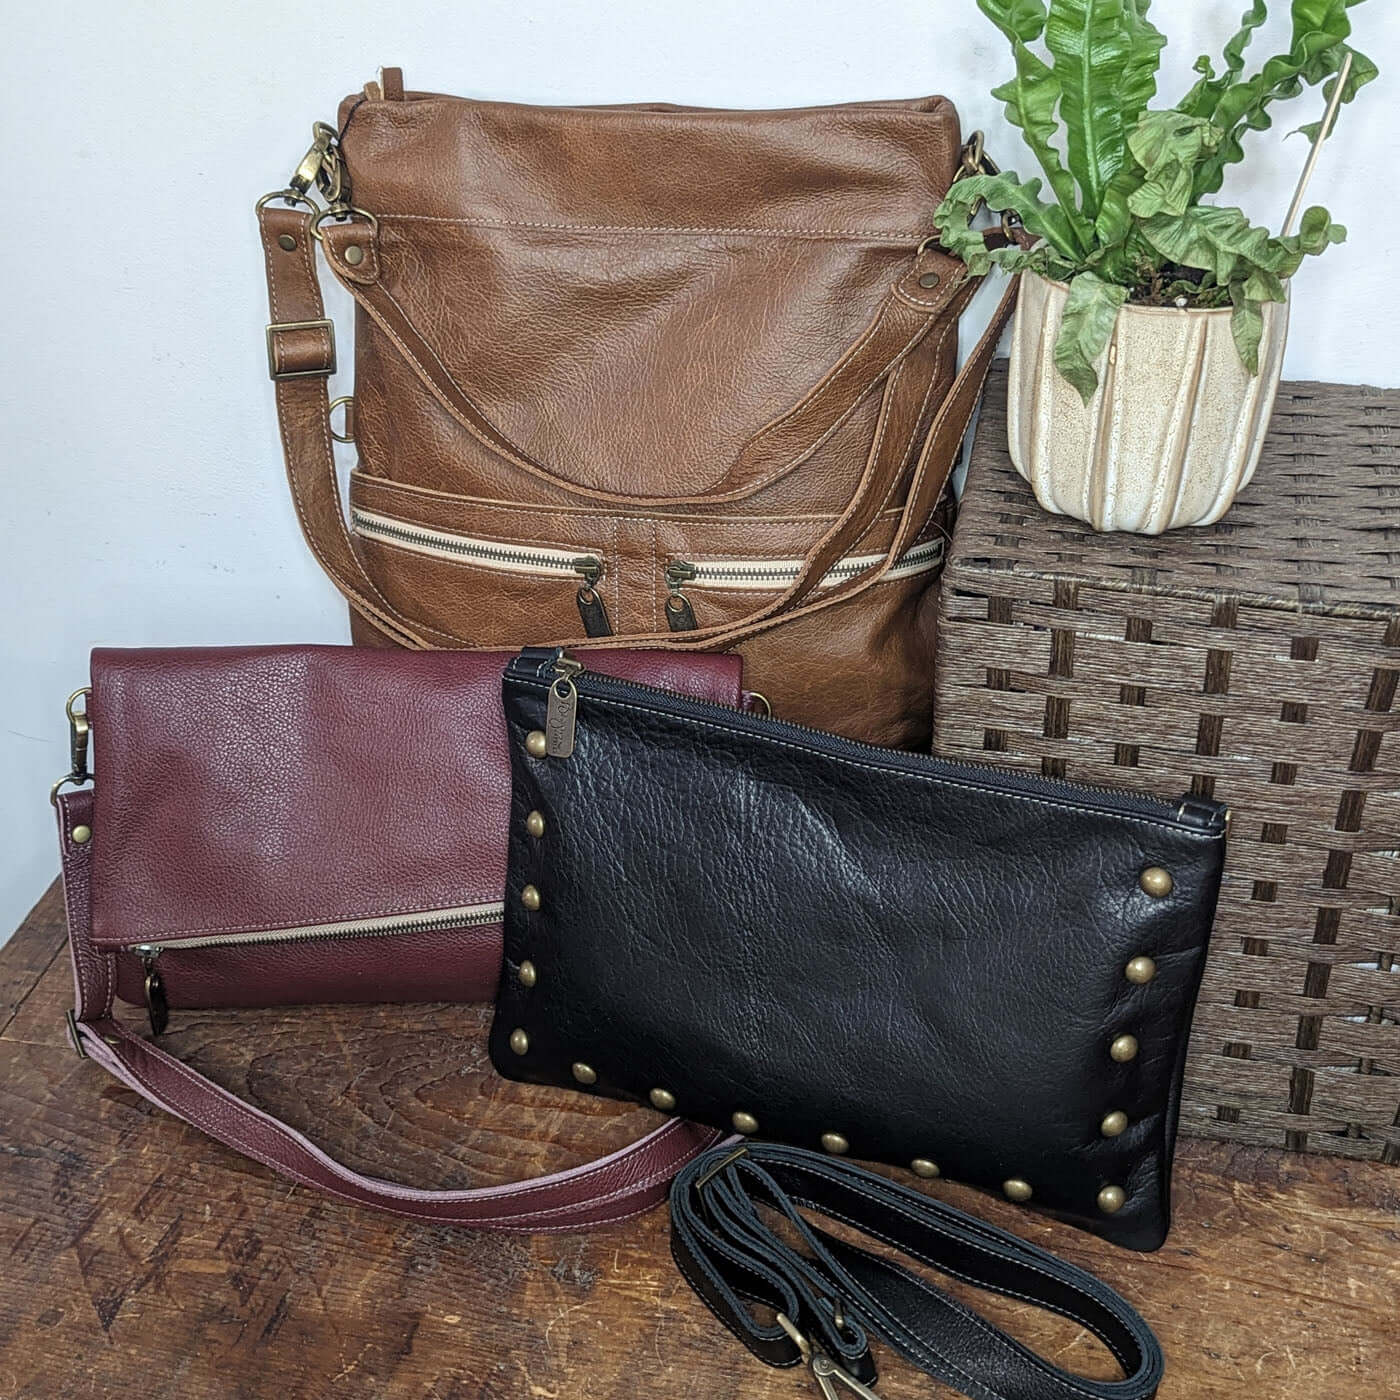 All Things Leather blog by American handbag designer Brynn Capella